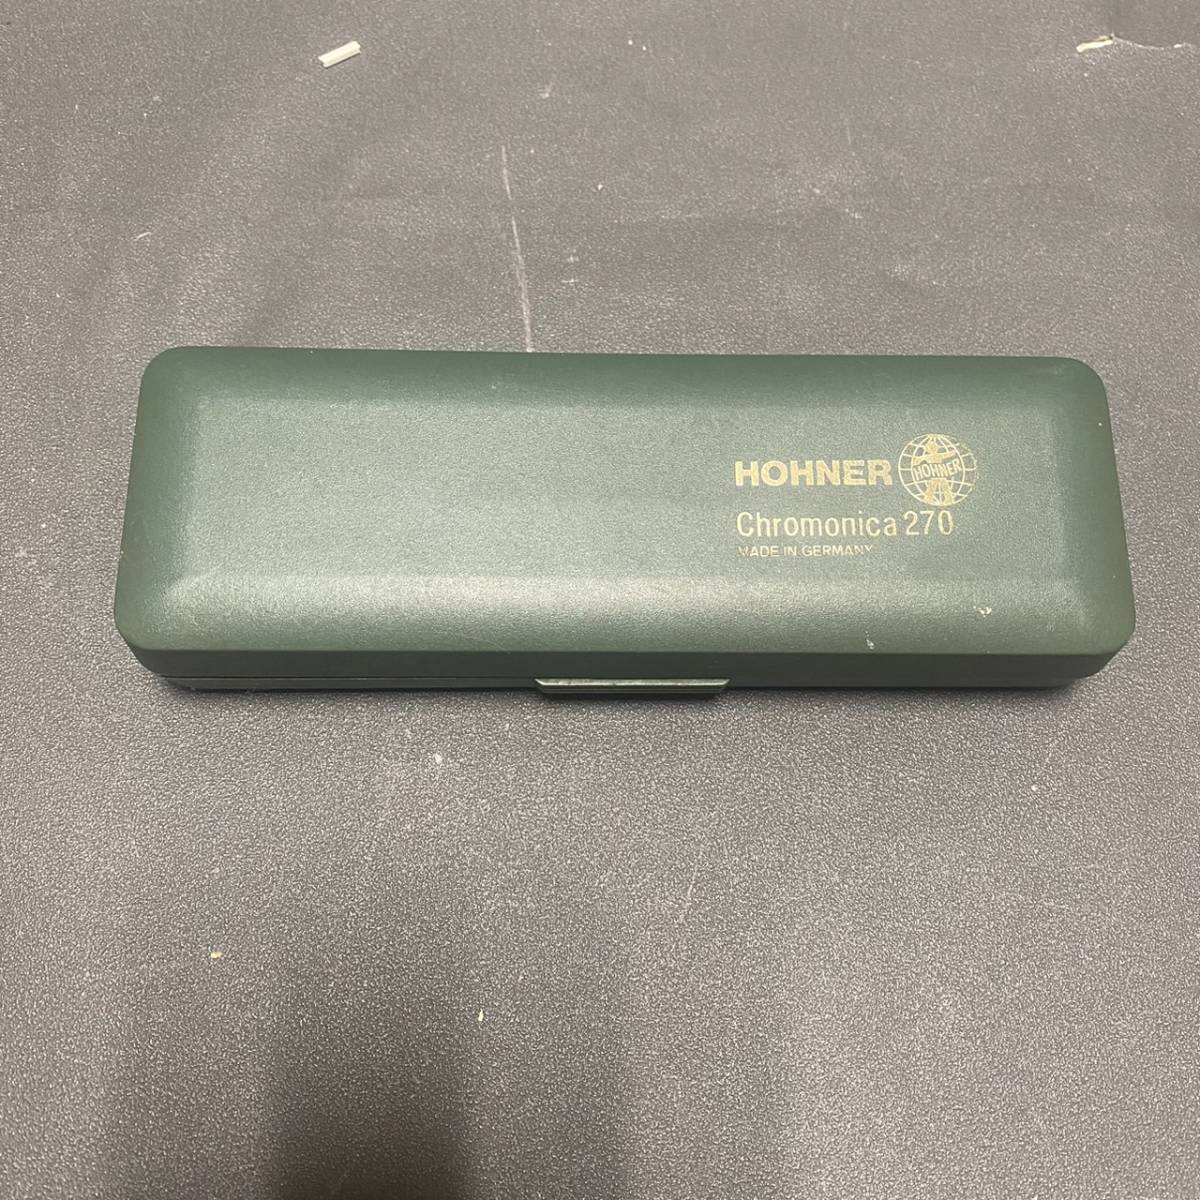 241013N HOHNER horn na- black matic harmonica Germany made C style CHROMONICA black matic harmonica 48 270/48